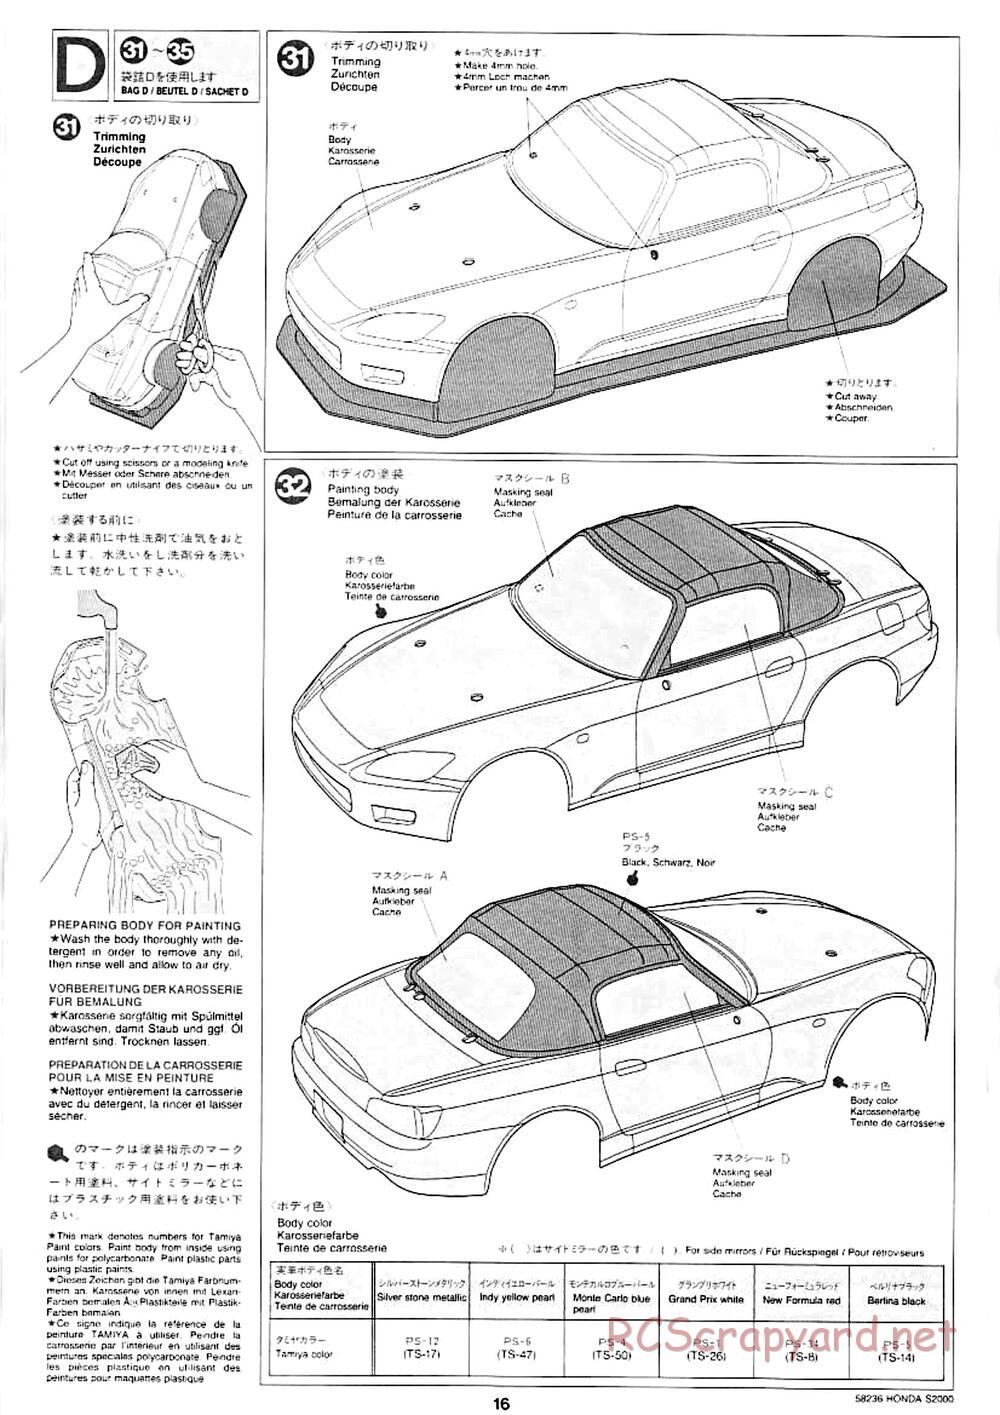 Tamiya - Honda S2000 - M04L Chassis - Manual - Page 14